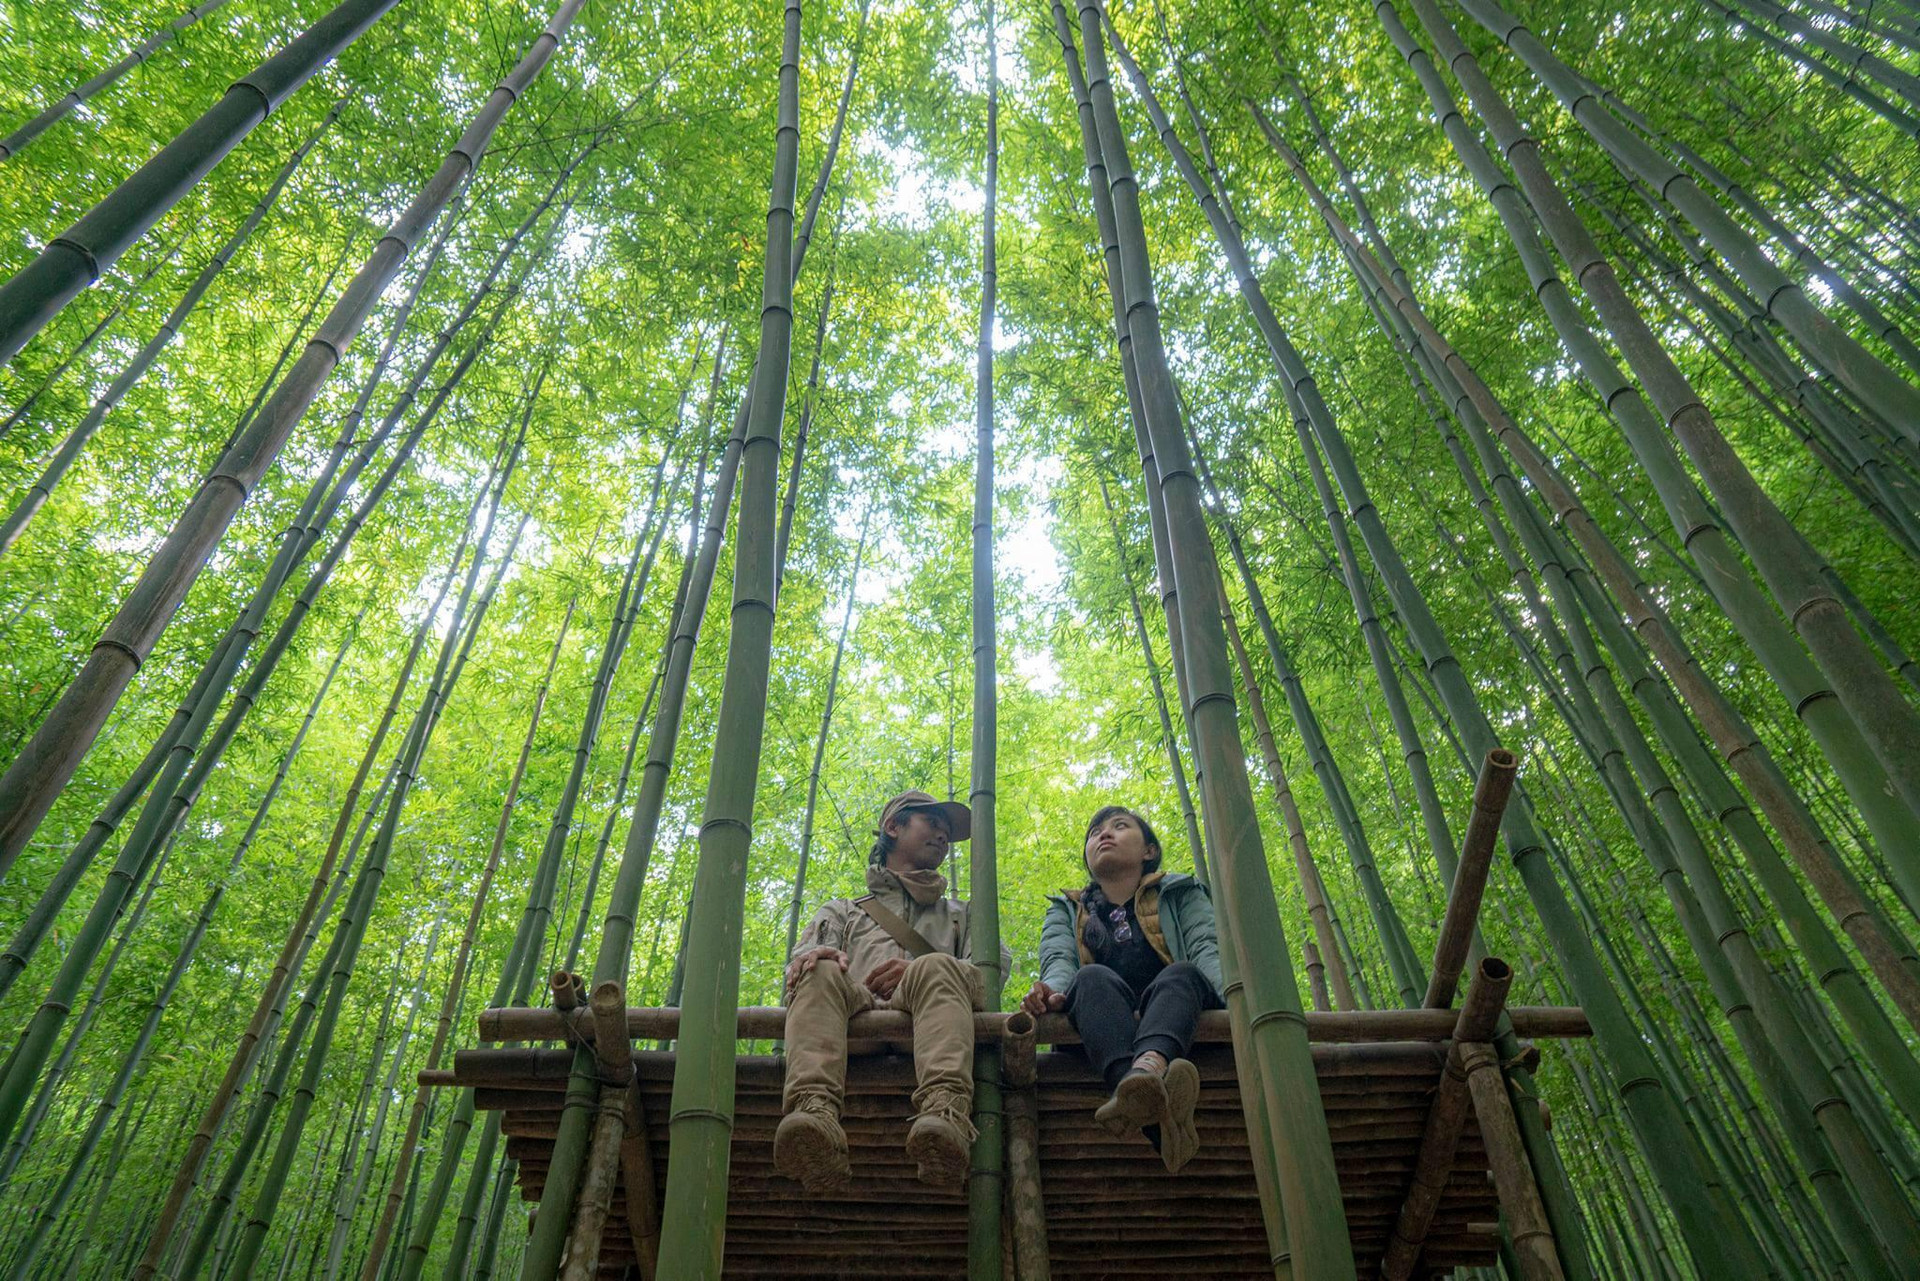 Phát hiện rừng trúc kỳ vĩ đẹp hơn cả cảnh phim kiếm hiệp ngay tại Việt Nam - 7